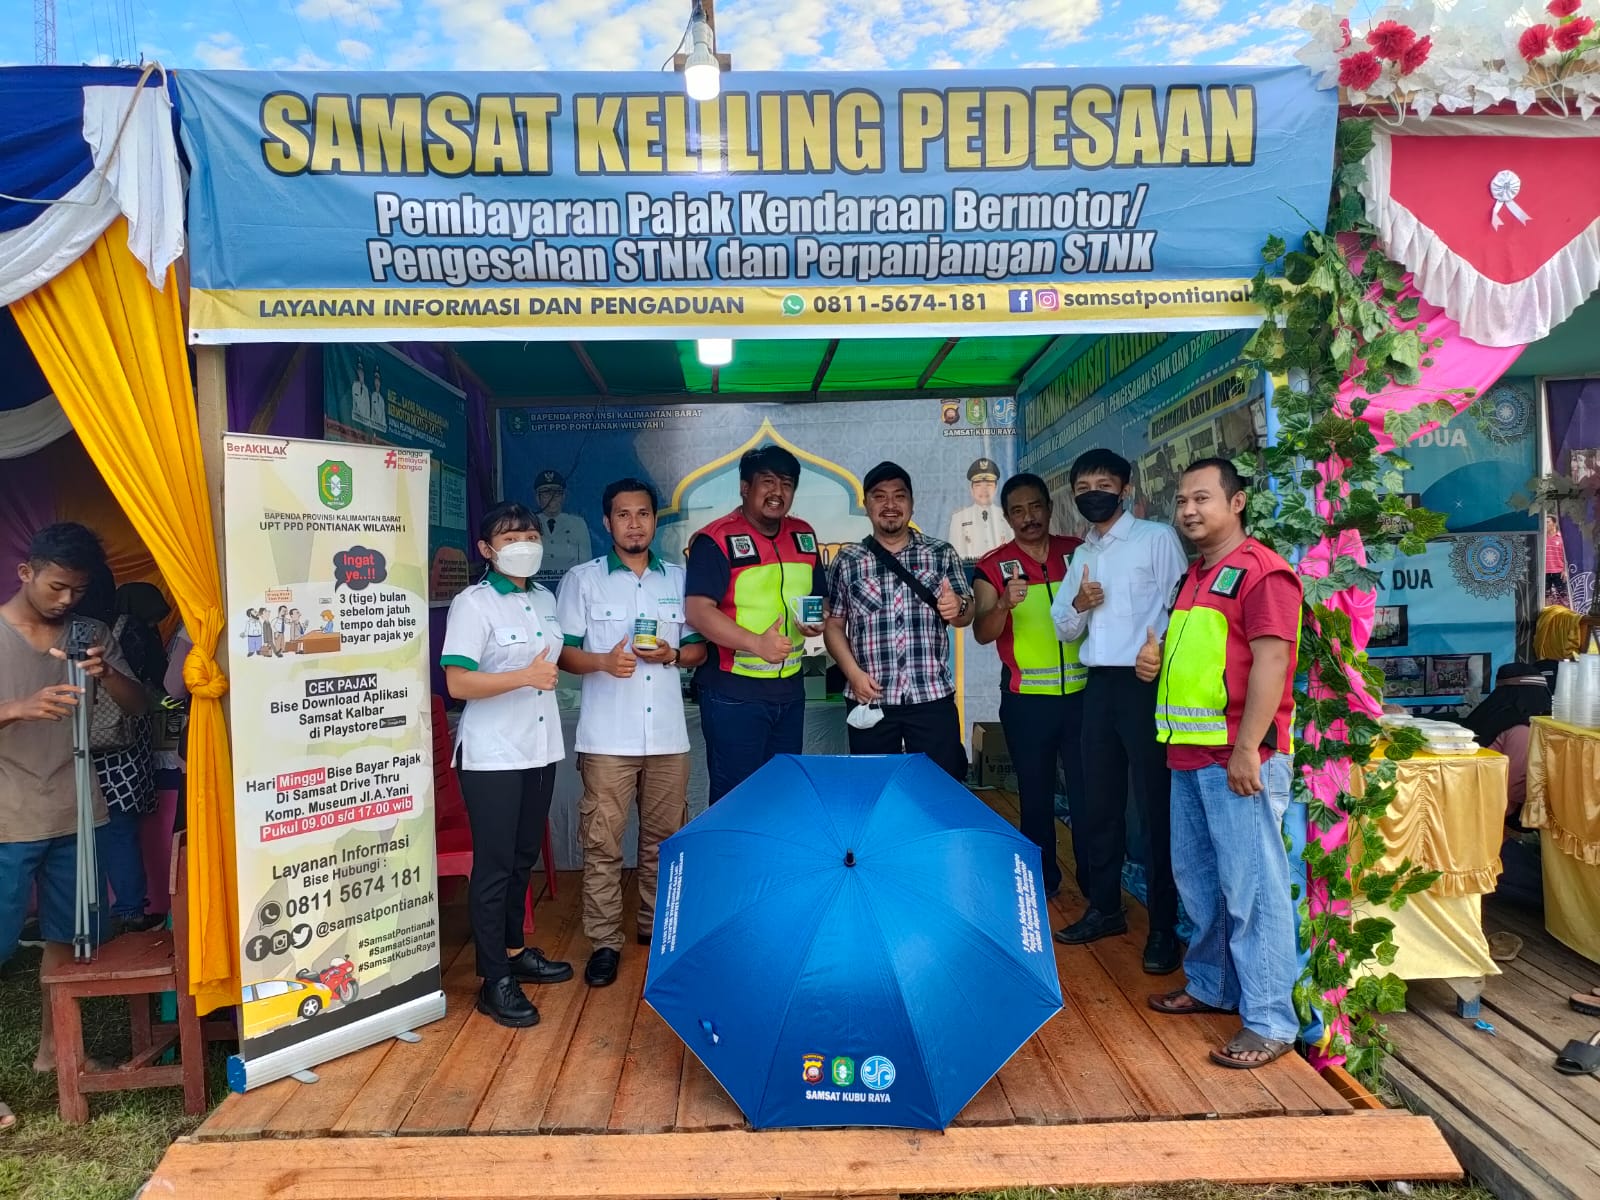 UPT PPD Pontianak Buka Layanan Samsat Keliling, bertepatan dengan event MTQ di Kecamatan Terentang, Kabupaten Kubu Raya. (Foto: Istimewa)